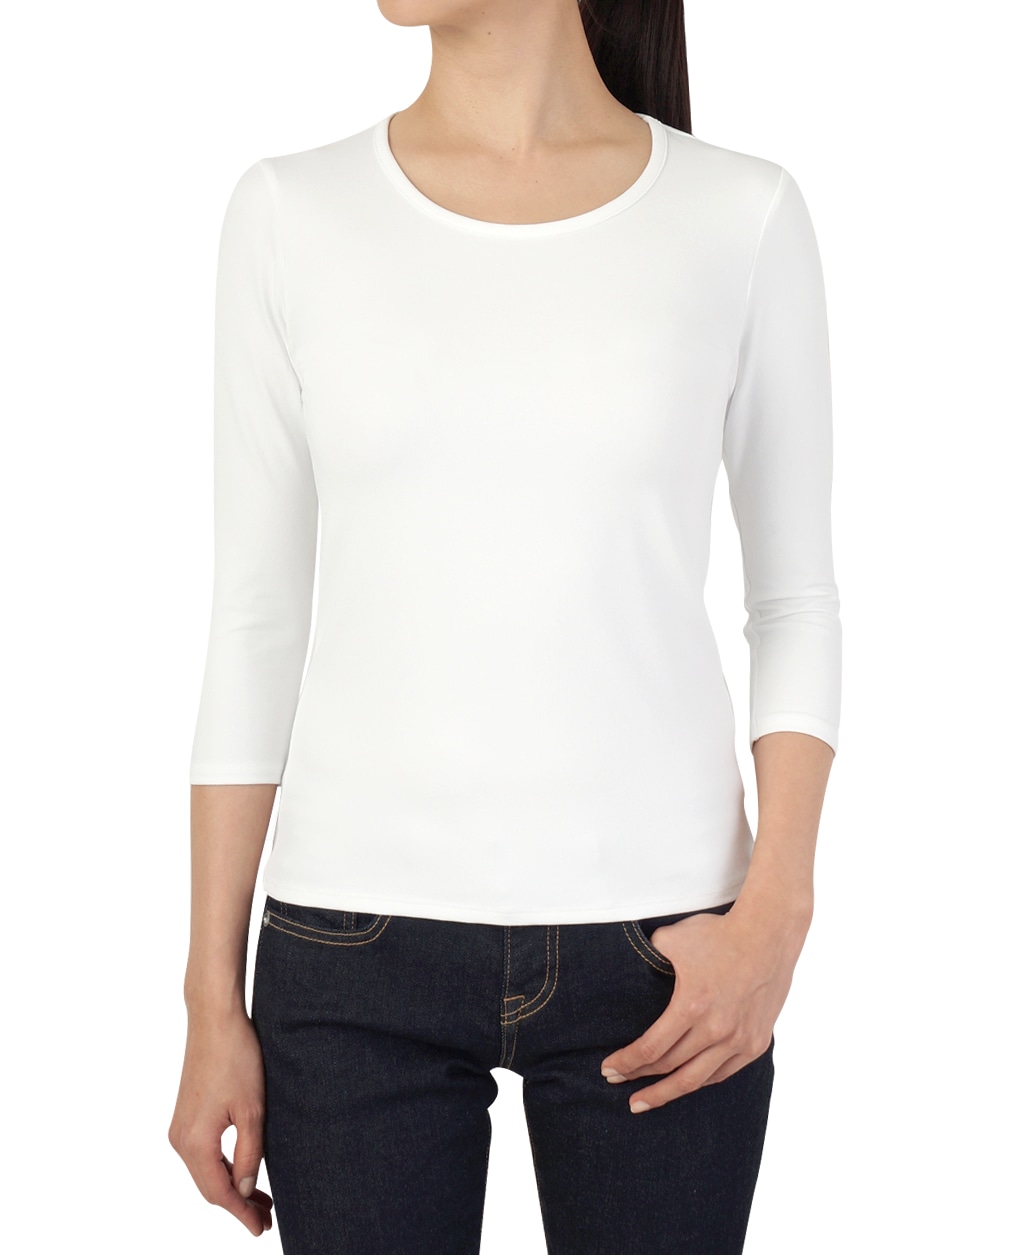 クルーネック七分袖カットソー(36 白): レディース | メーカーズシャツ鎌倉 公式通販 | 日本製ワイシャツ ネクタイ ブラウス